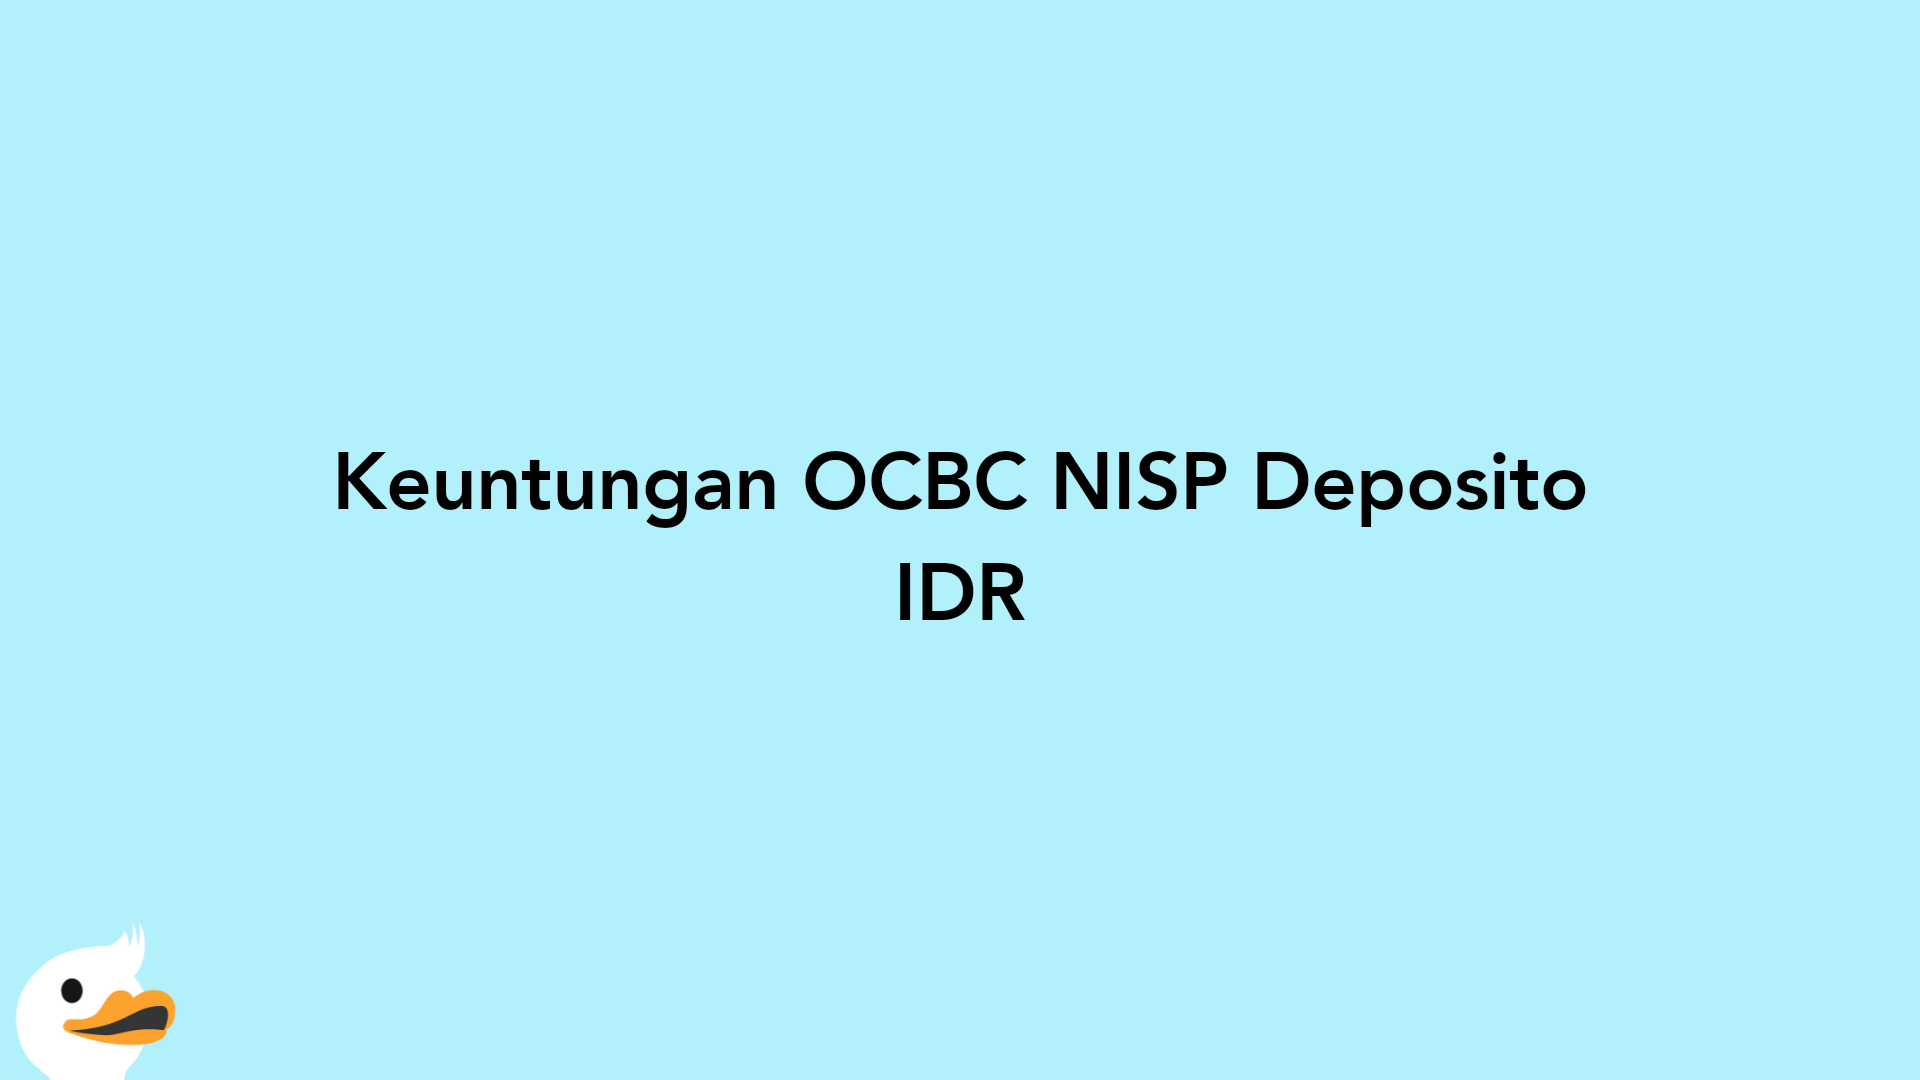 Keuntungan OCBC NISP Deposito IDR